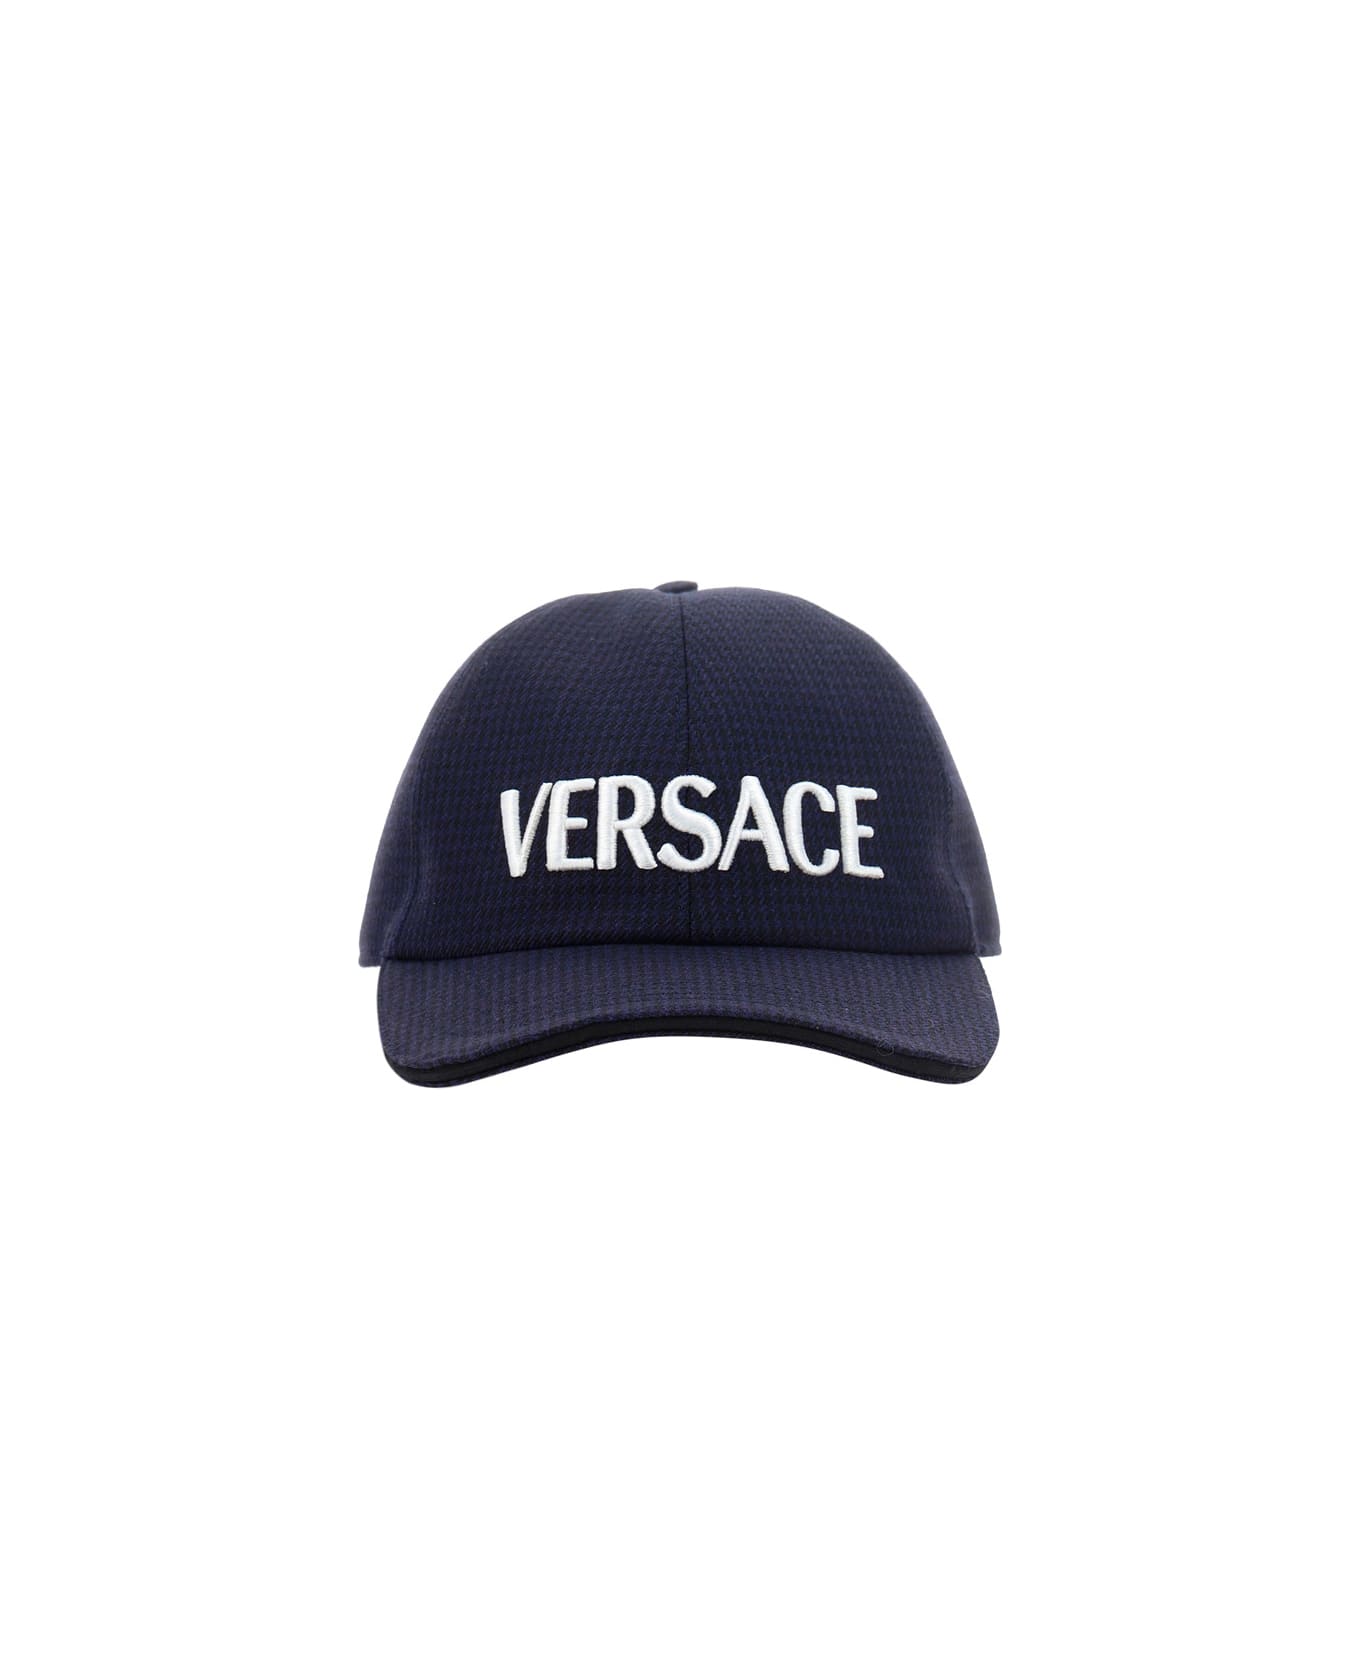 Versace Baseball Cap - Nero+navy